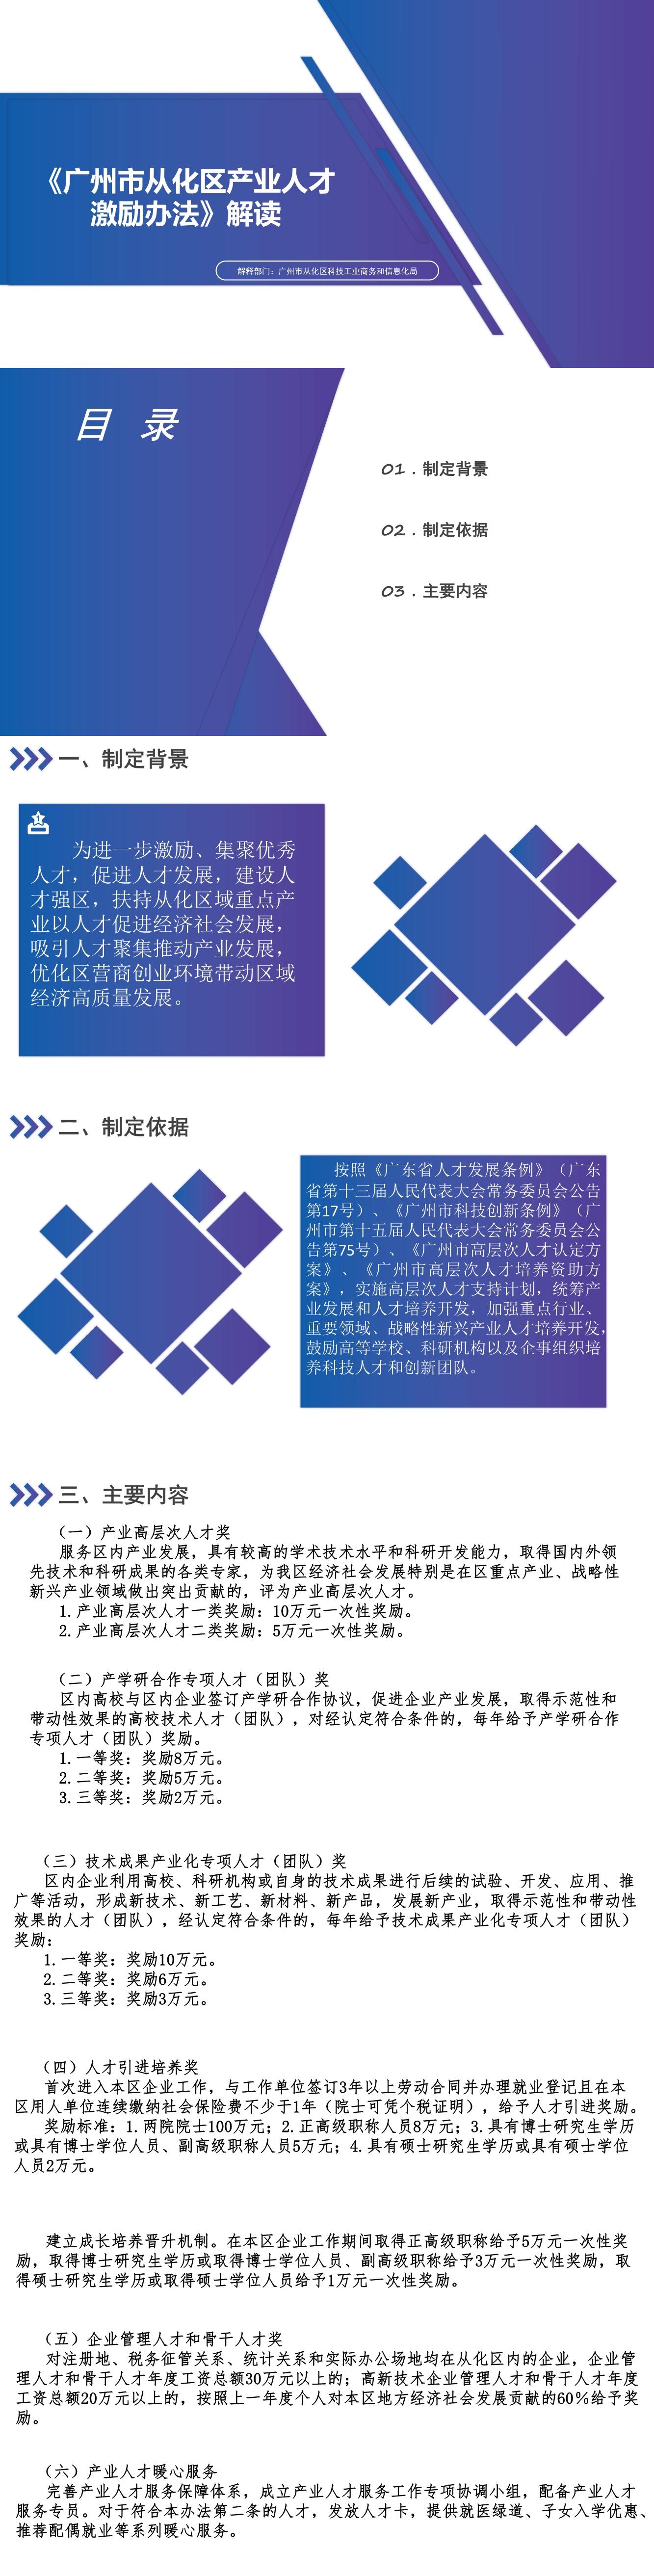 广州市从化区产业人才激励办法政策解读（20230417图片版）(1).jpg